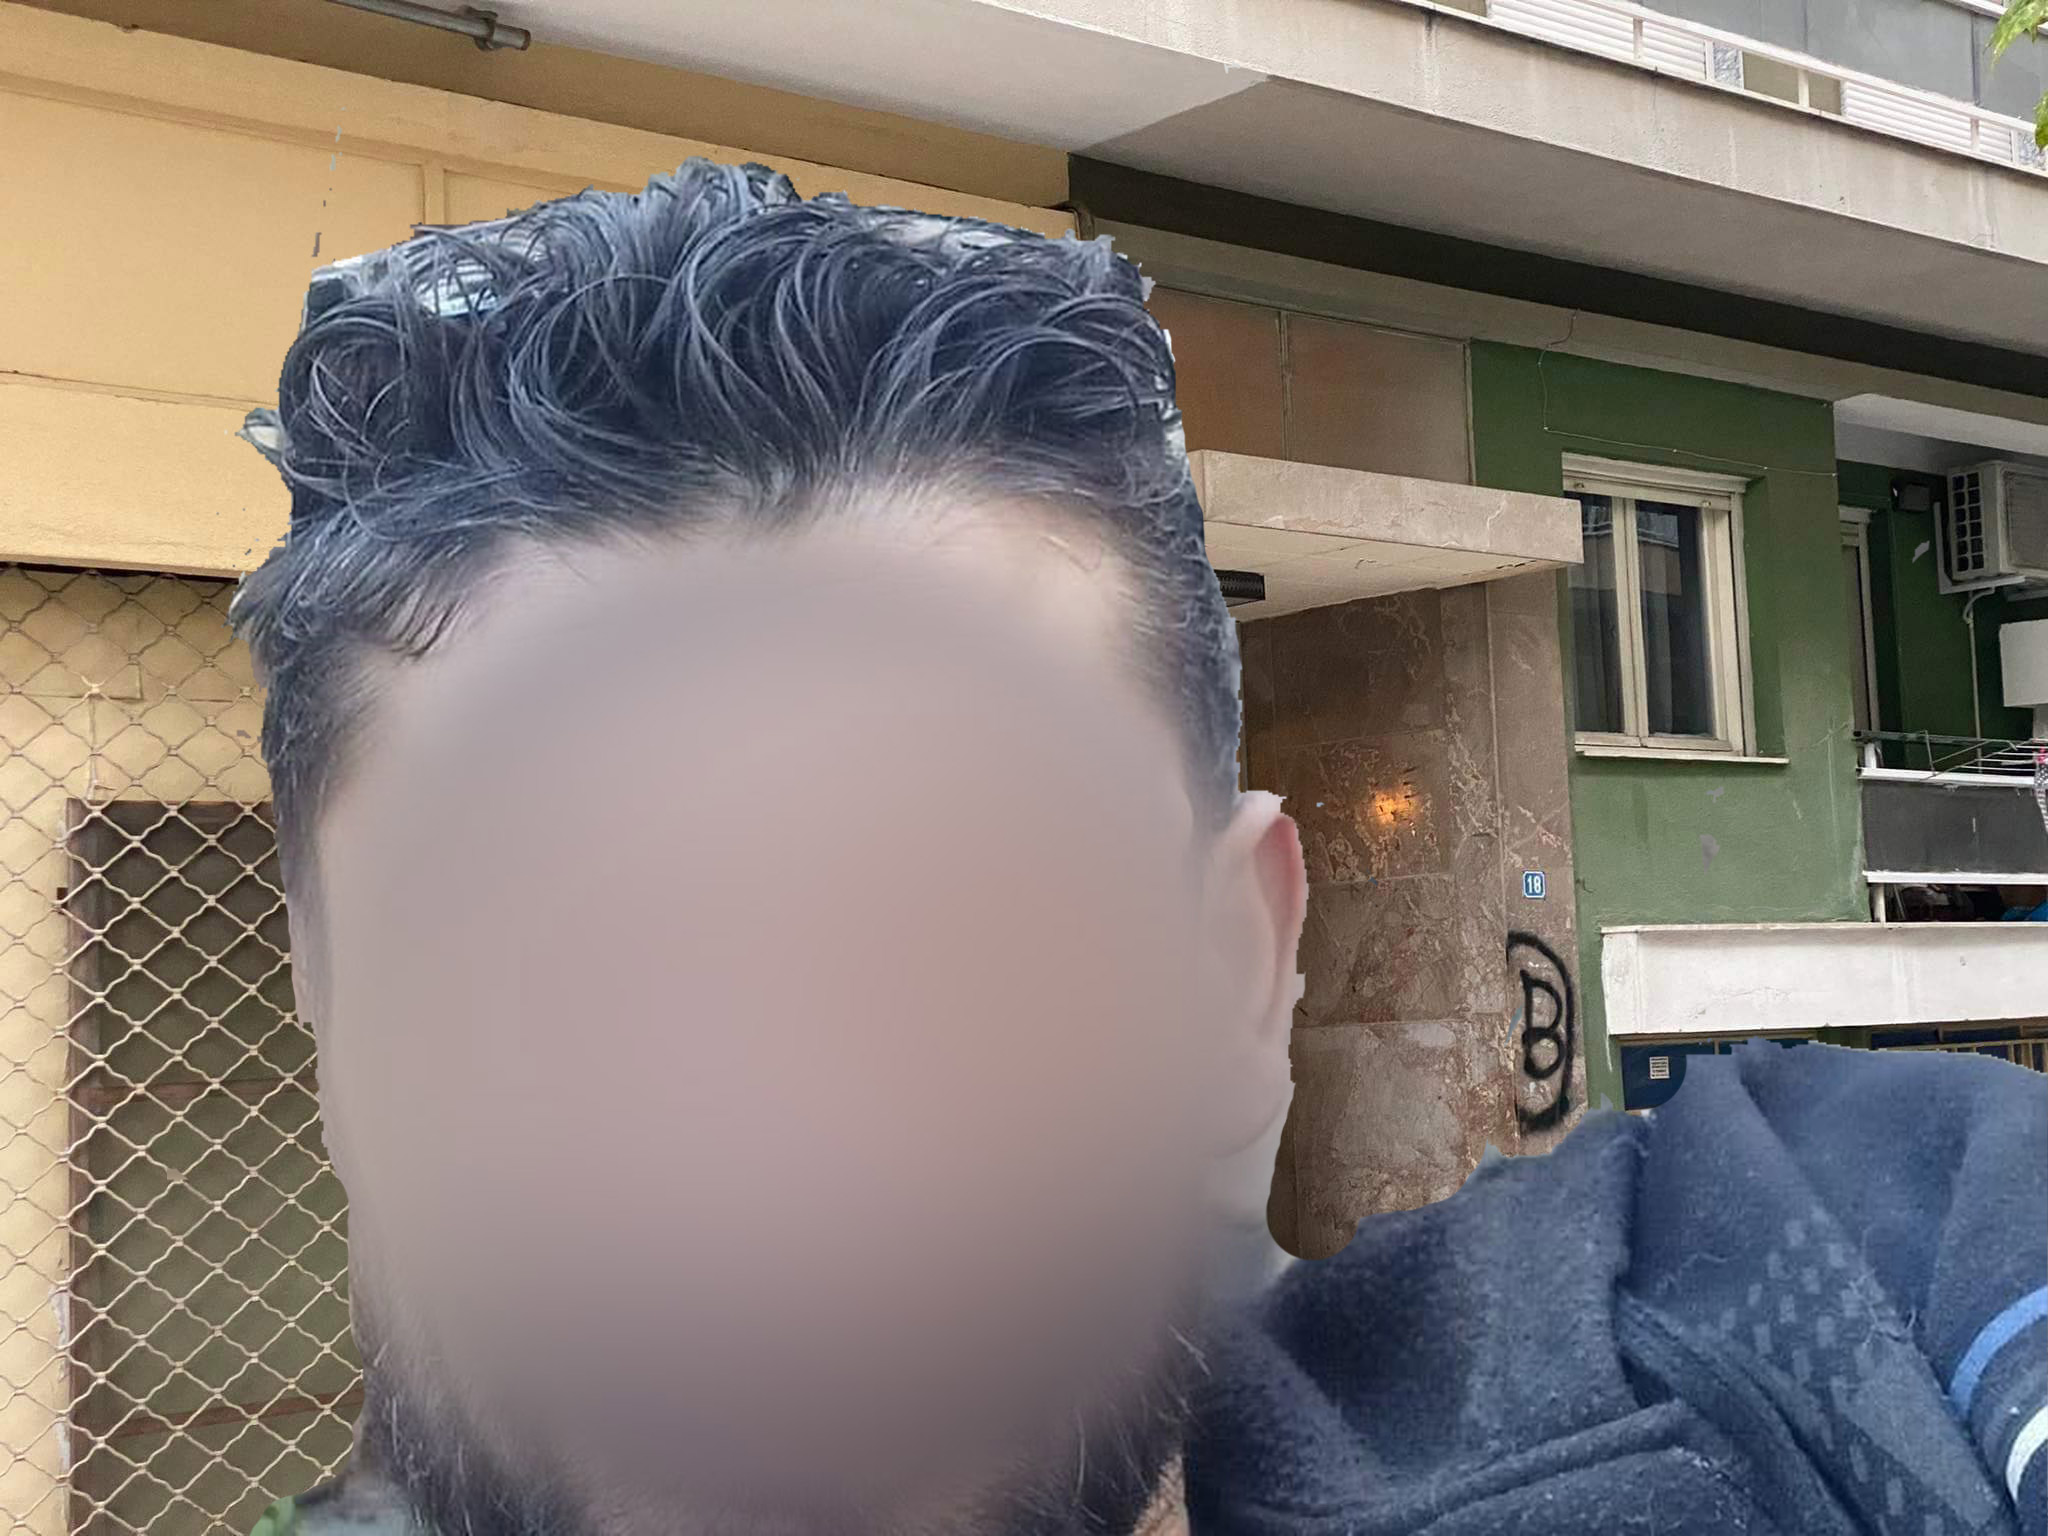 Θεσσαλονίκη: Πατέρας σκότωσε τον γιο του στη Μενεμένη – Το οικογενειακό δράμα πίσω από τη δολοφονία